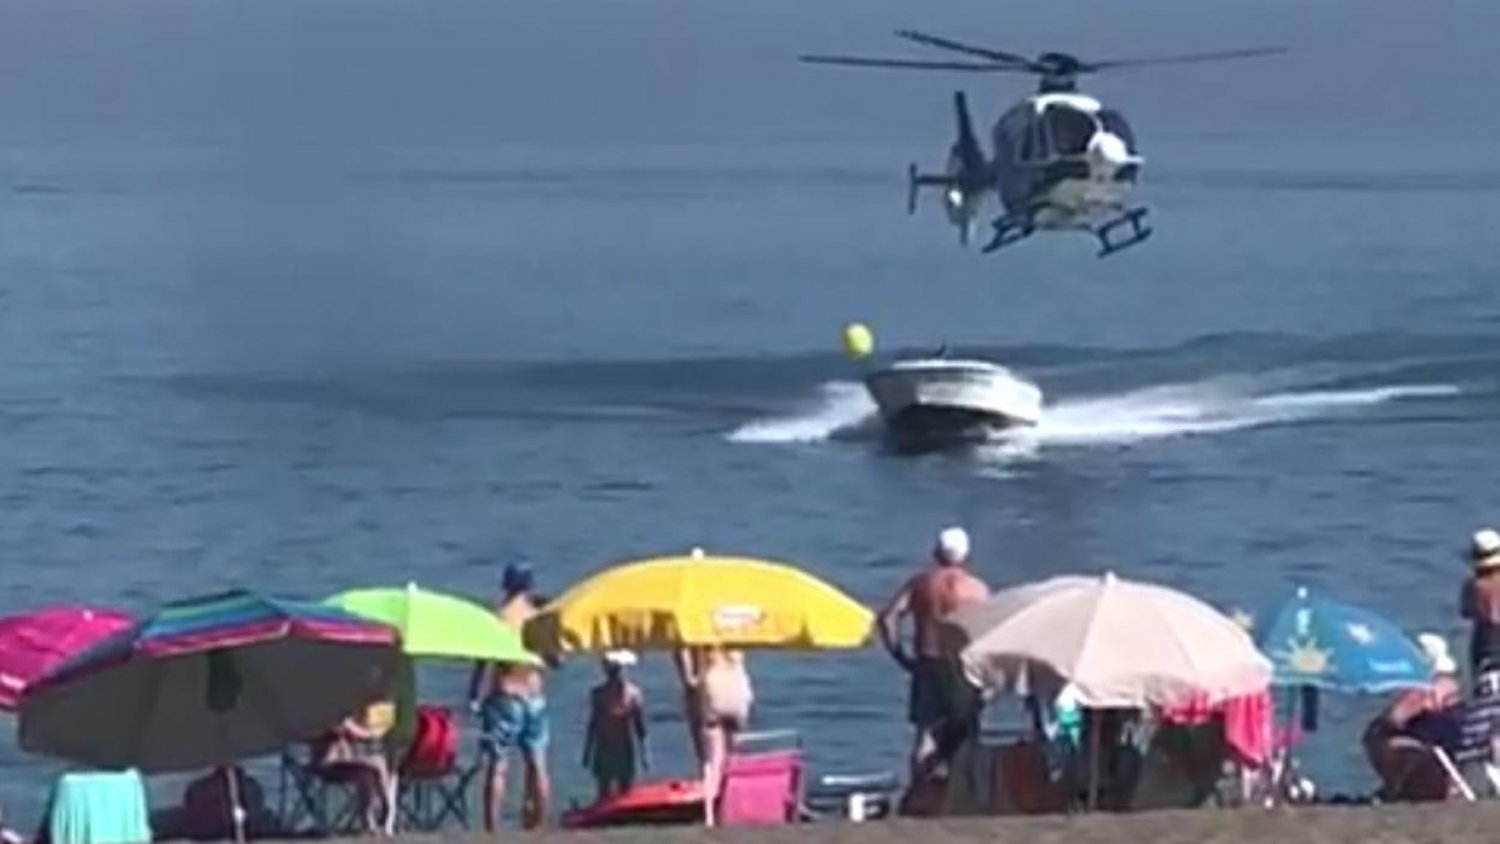 Una persecución entre un helicóptero de la Policía y una lancha pilla por sorpresa a los bañistas en Manilva